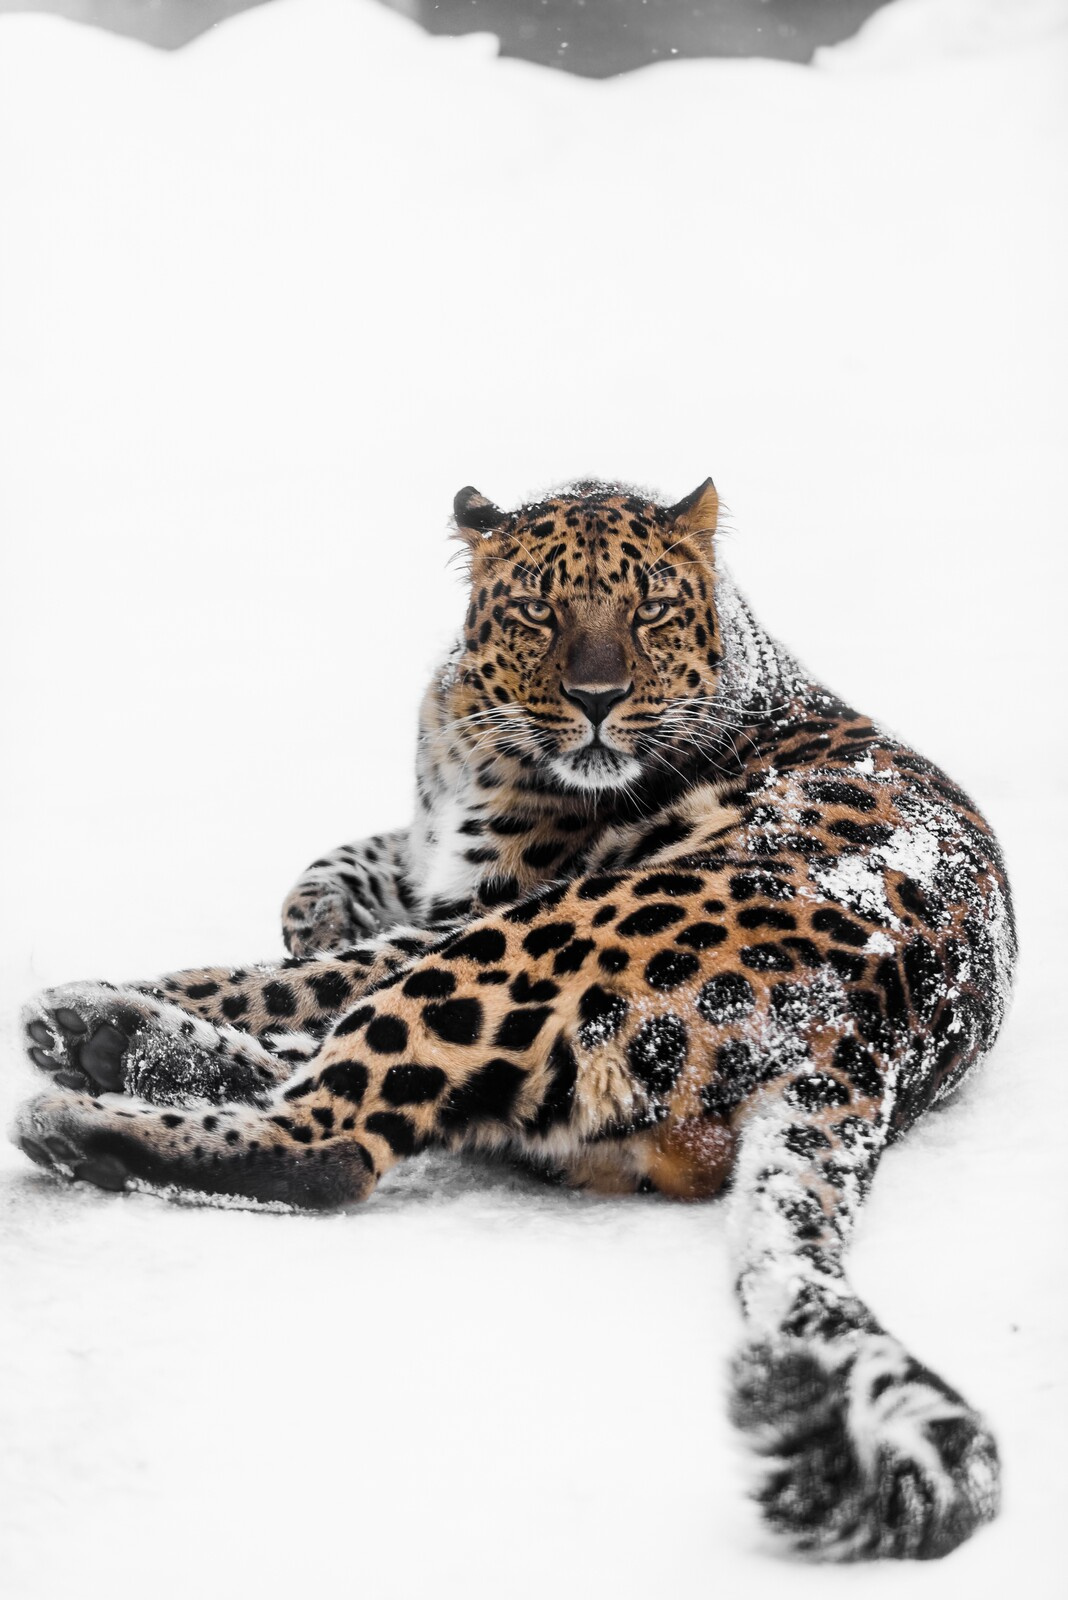 Дальневосточный леопард. Фото: Михаил Колесников, участник конкурса РГО 